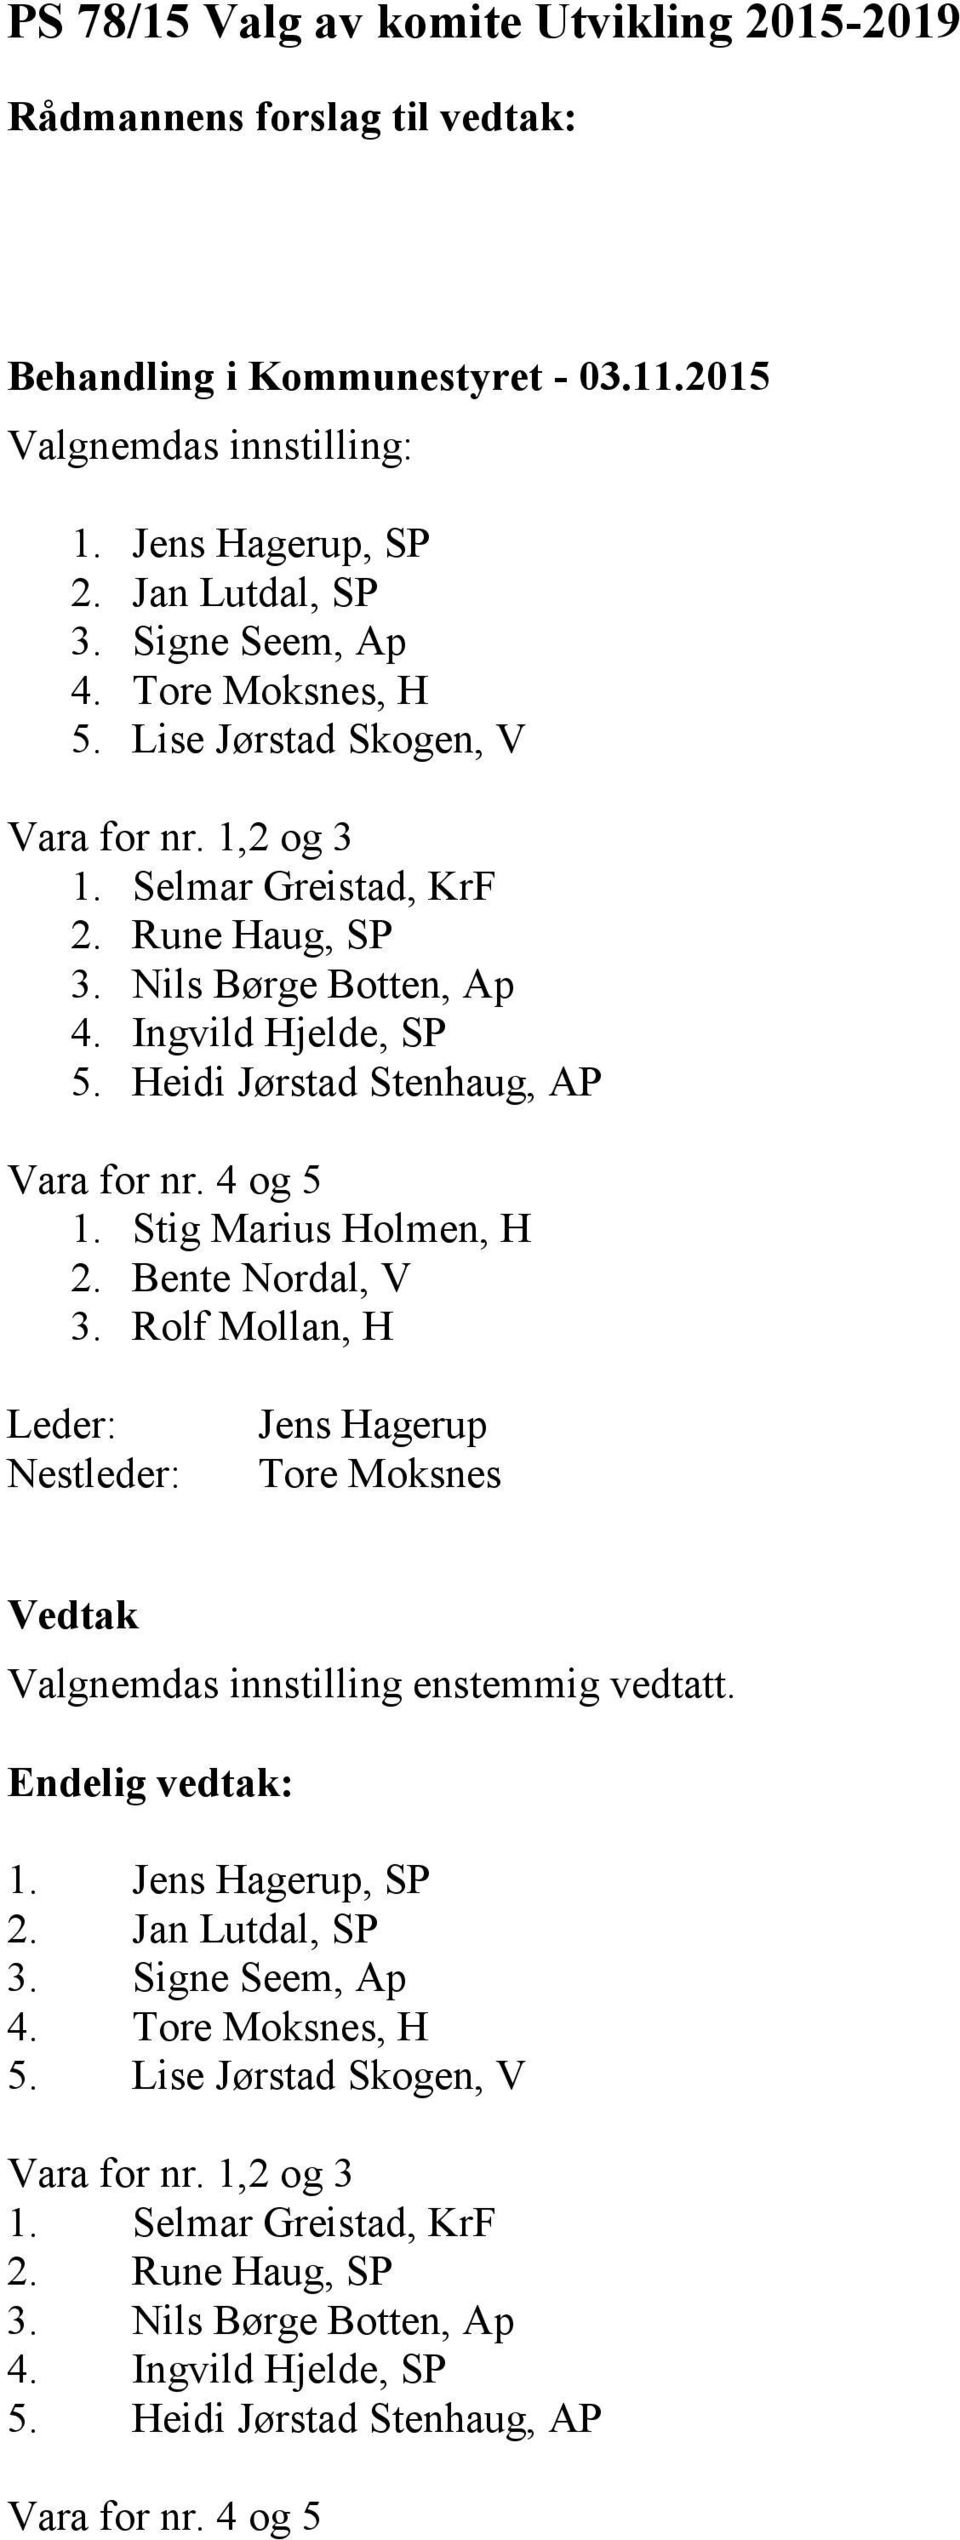 4 og 5 1. Stig Marius Holmen, H 2. Bente Nordal, V 3. Rolf Mollan, H Leder: Nestleder: Jens Hagerup Tore Moksnes 1. Jens Hagerup, SP 2. Jan Lutdal, SP 3. Signe Seem, Ap 4.